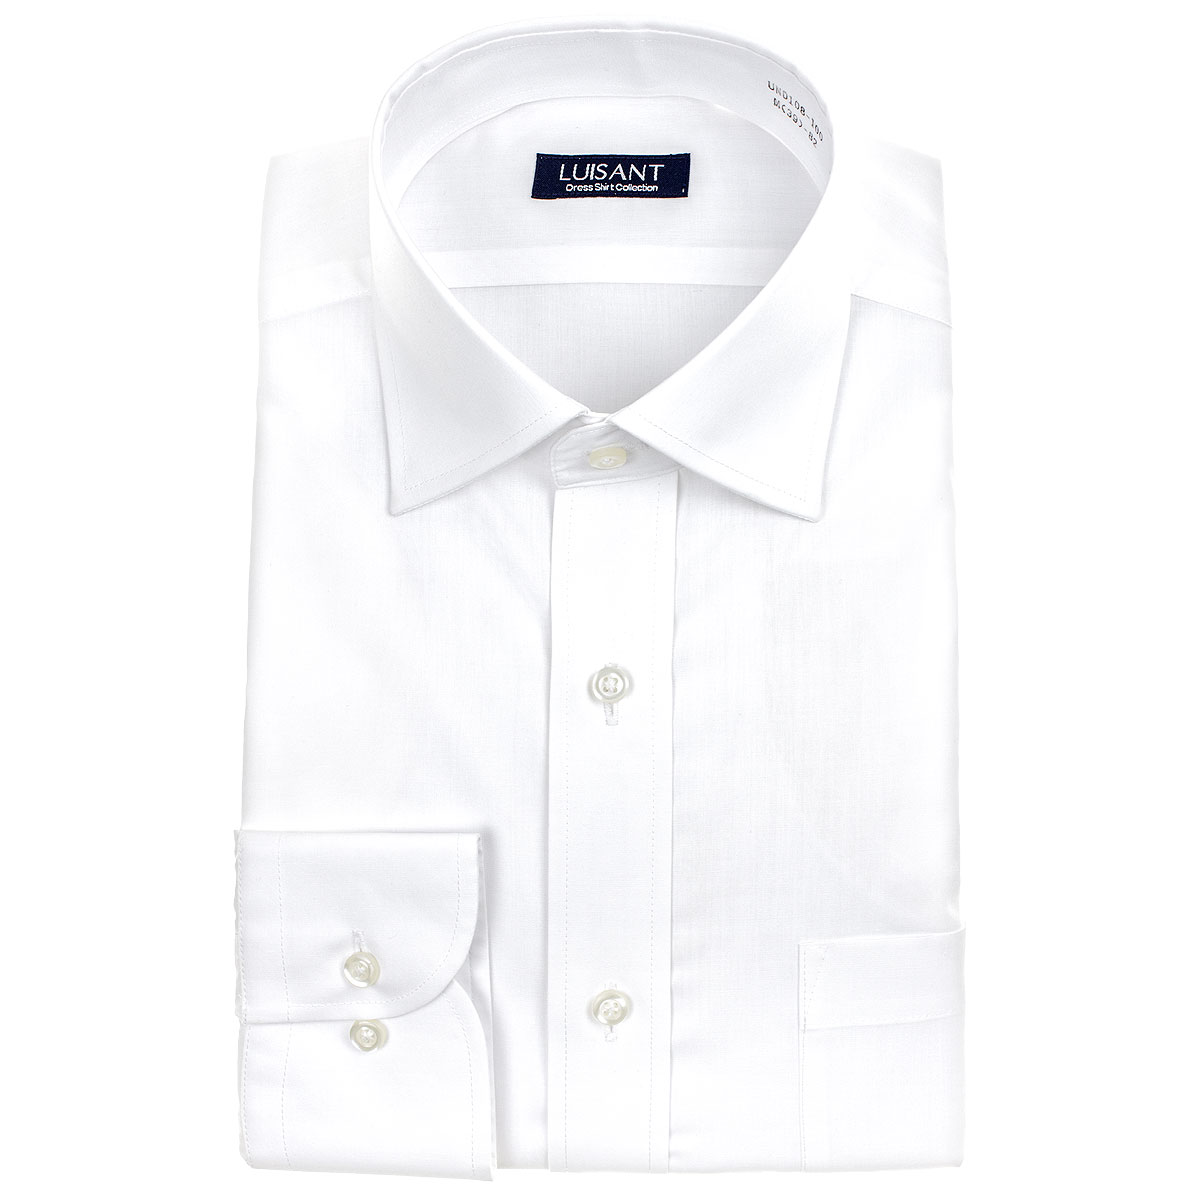 白ワイシャツ 長袖5枚セット 1枚あたり1299円 形態安定 標準体 ワイシャツ 送料込み［5枚セット/3枚セット/単品購入OK］